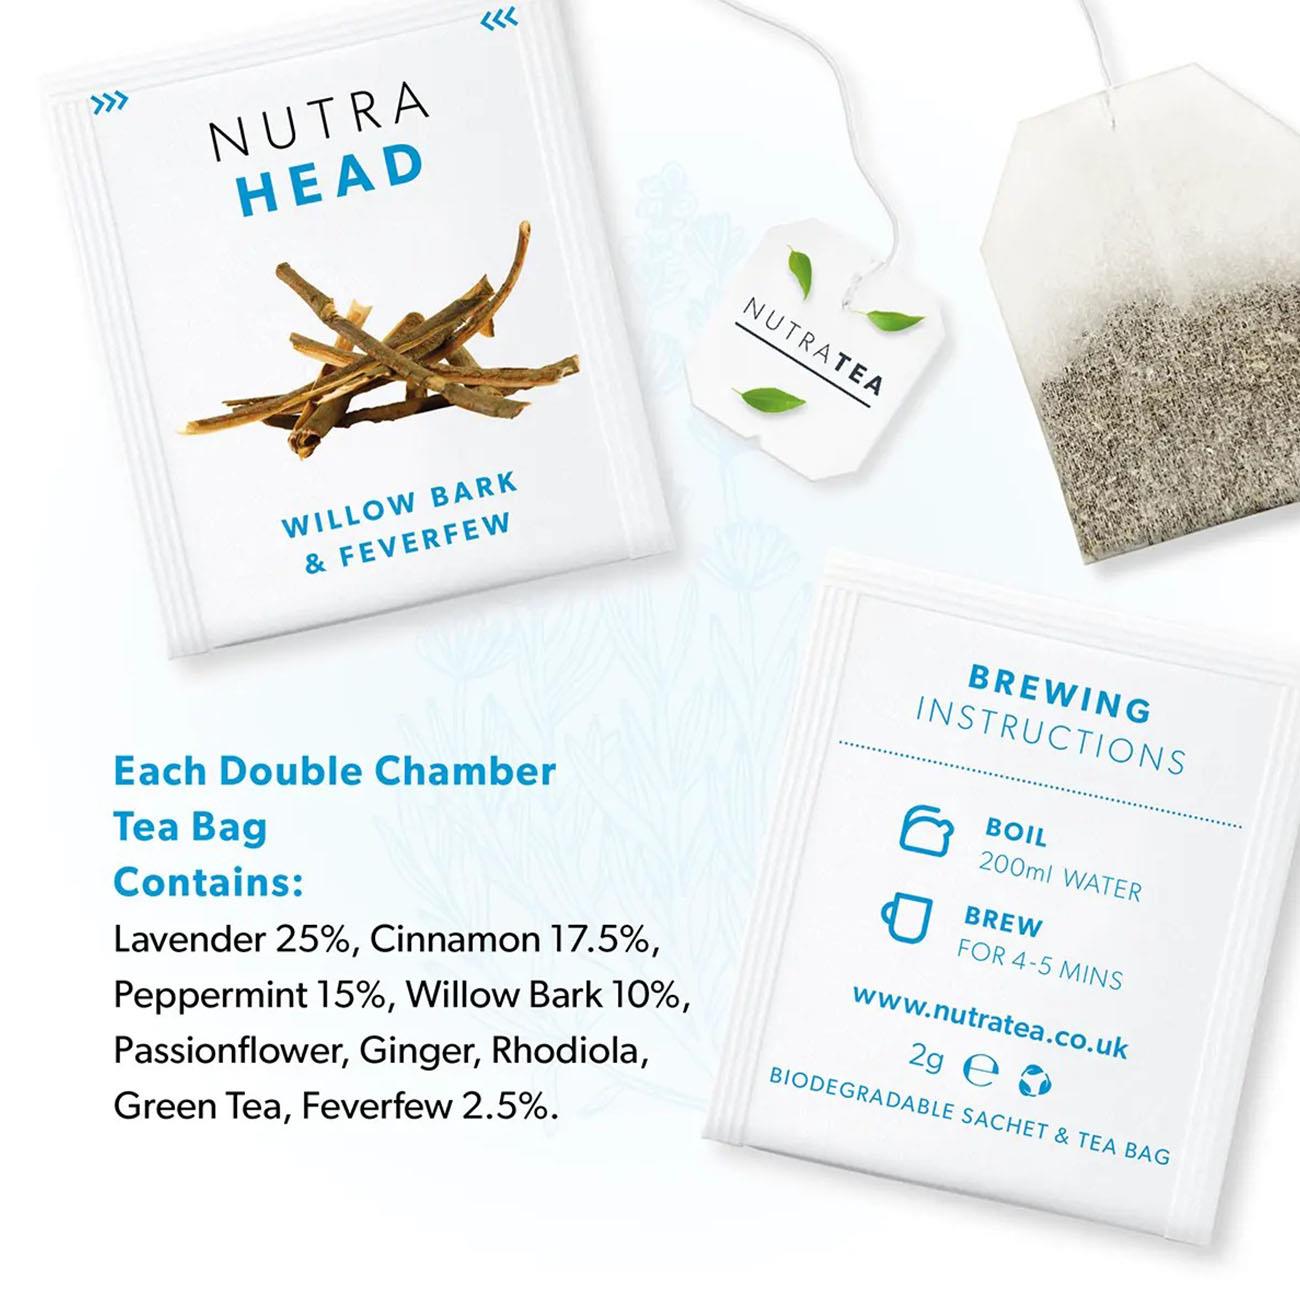 Nutratea Nutra Head Tea Herbal Tea 20 bags